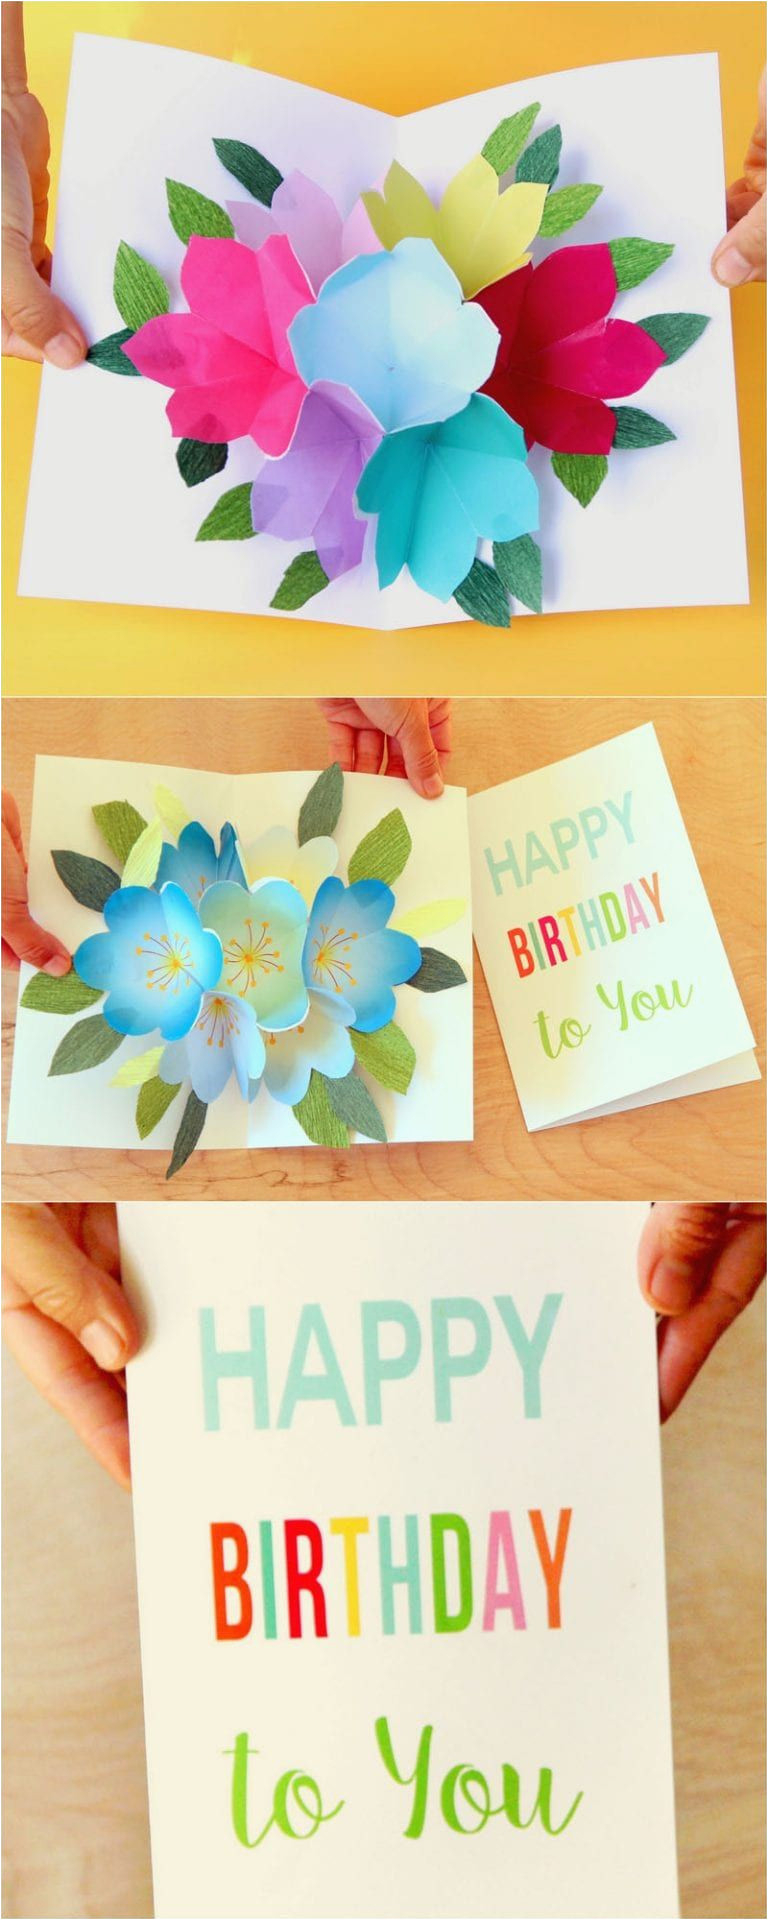 Pop Up Birthday Card Ideas Diy Birthday Card Ideas Pop Up Free Printable Happy Birthday Card